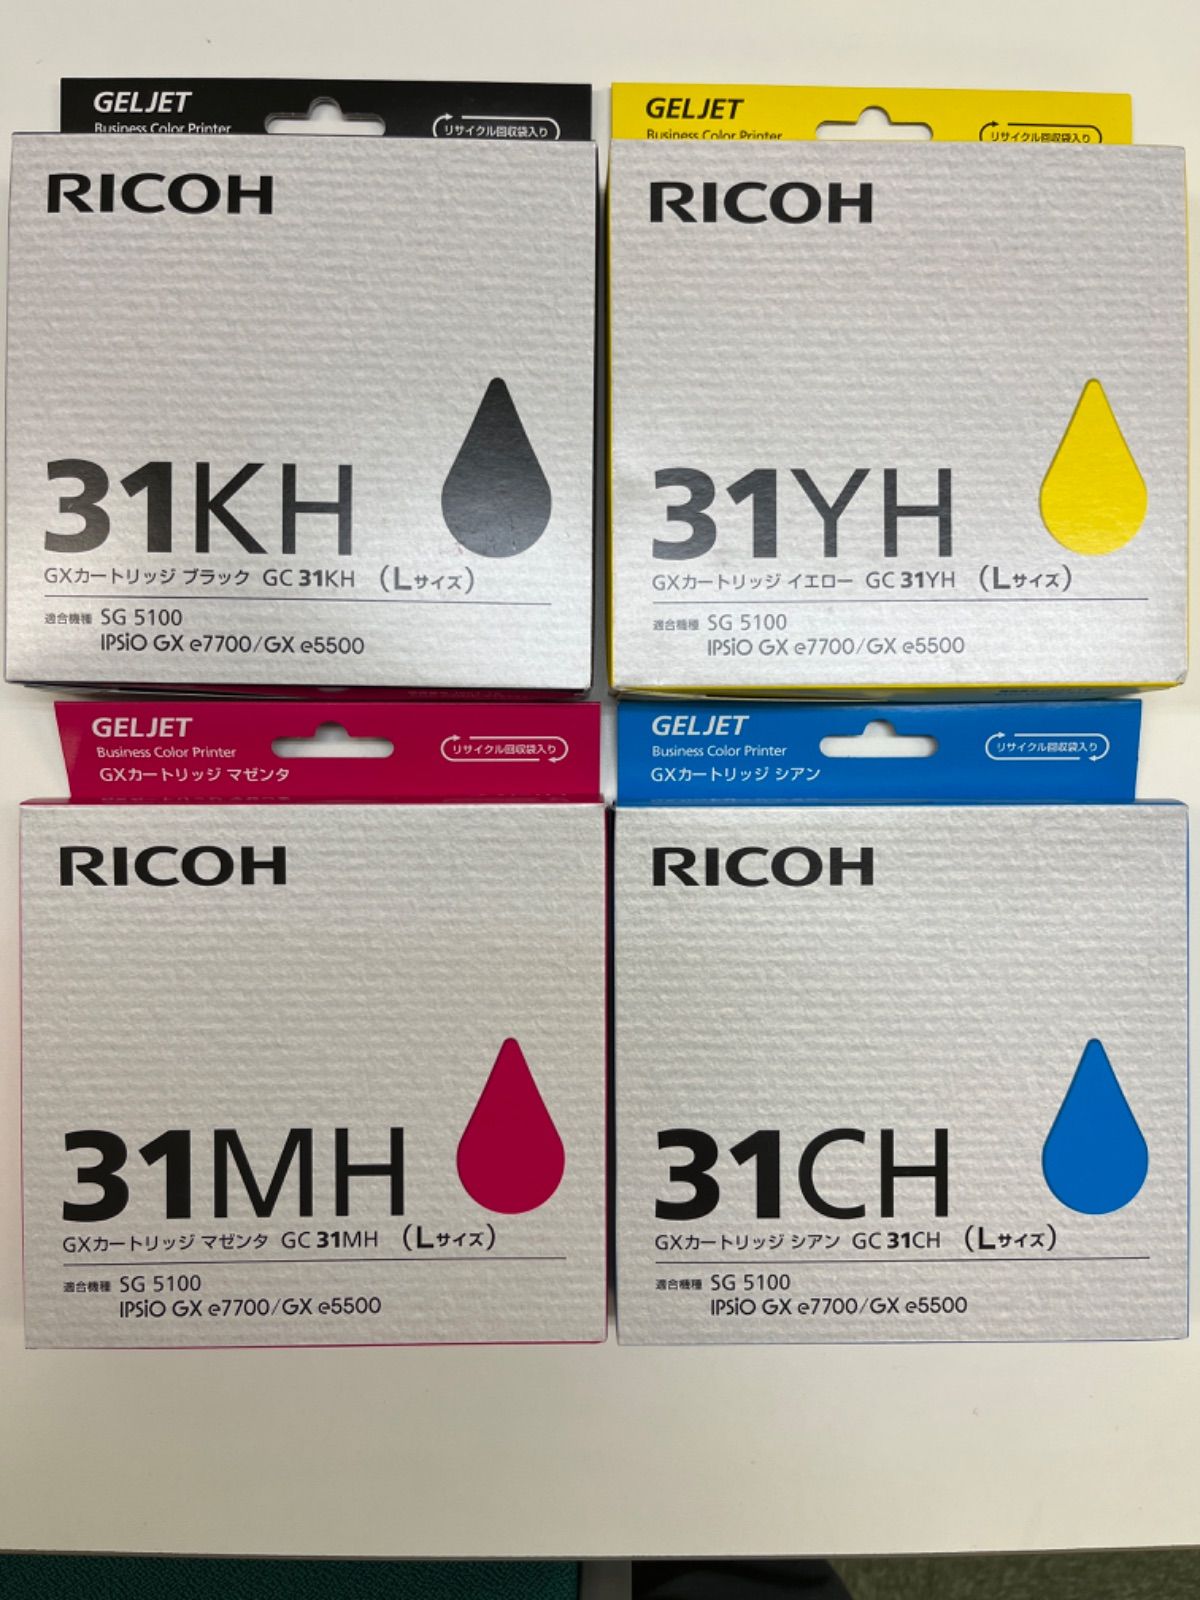 RICOH リコー 純正インク GXカートリッジ Mサイズ 4色セット GC31-4P IPSiO GX e5500 IPSiO GX e3300 IPSiO GX e2600 IPSiO GX e7700 - 13